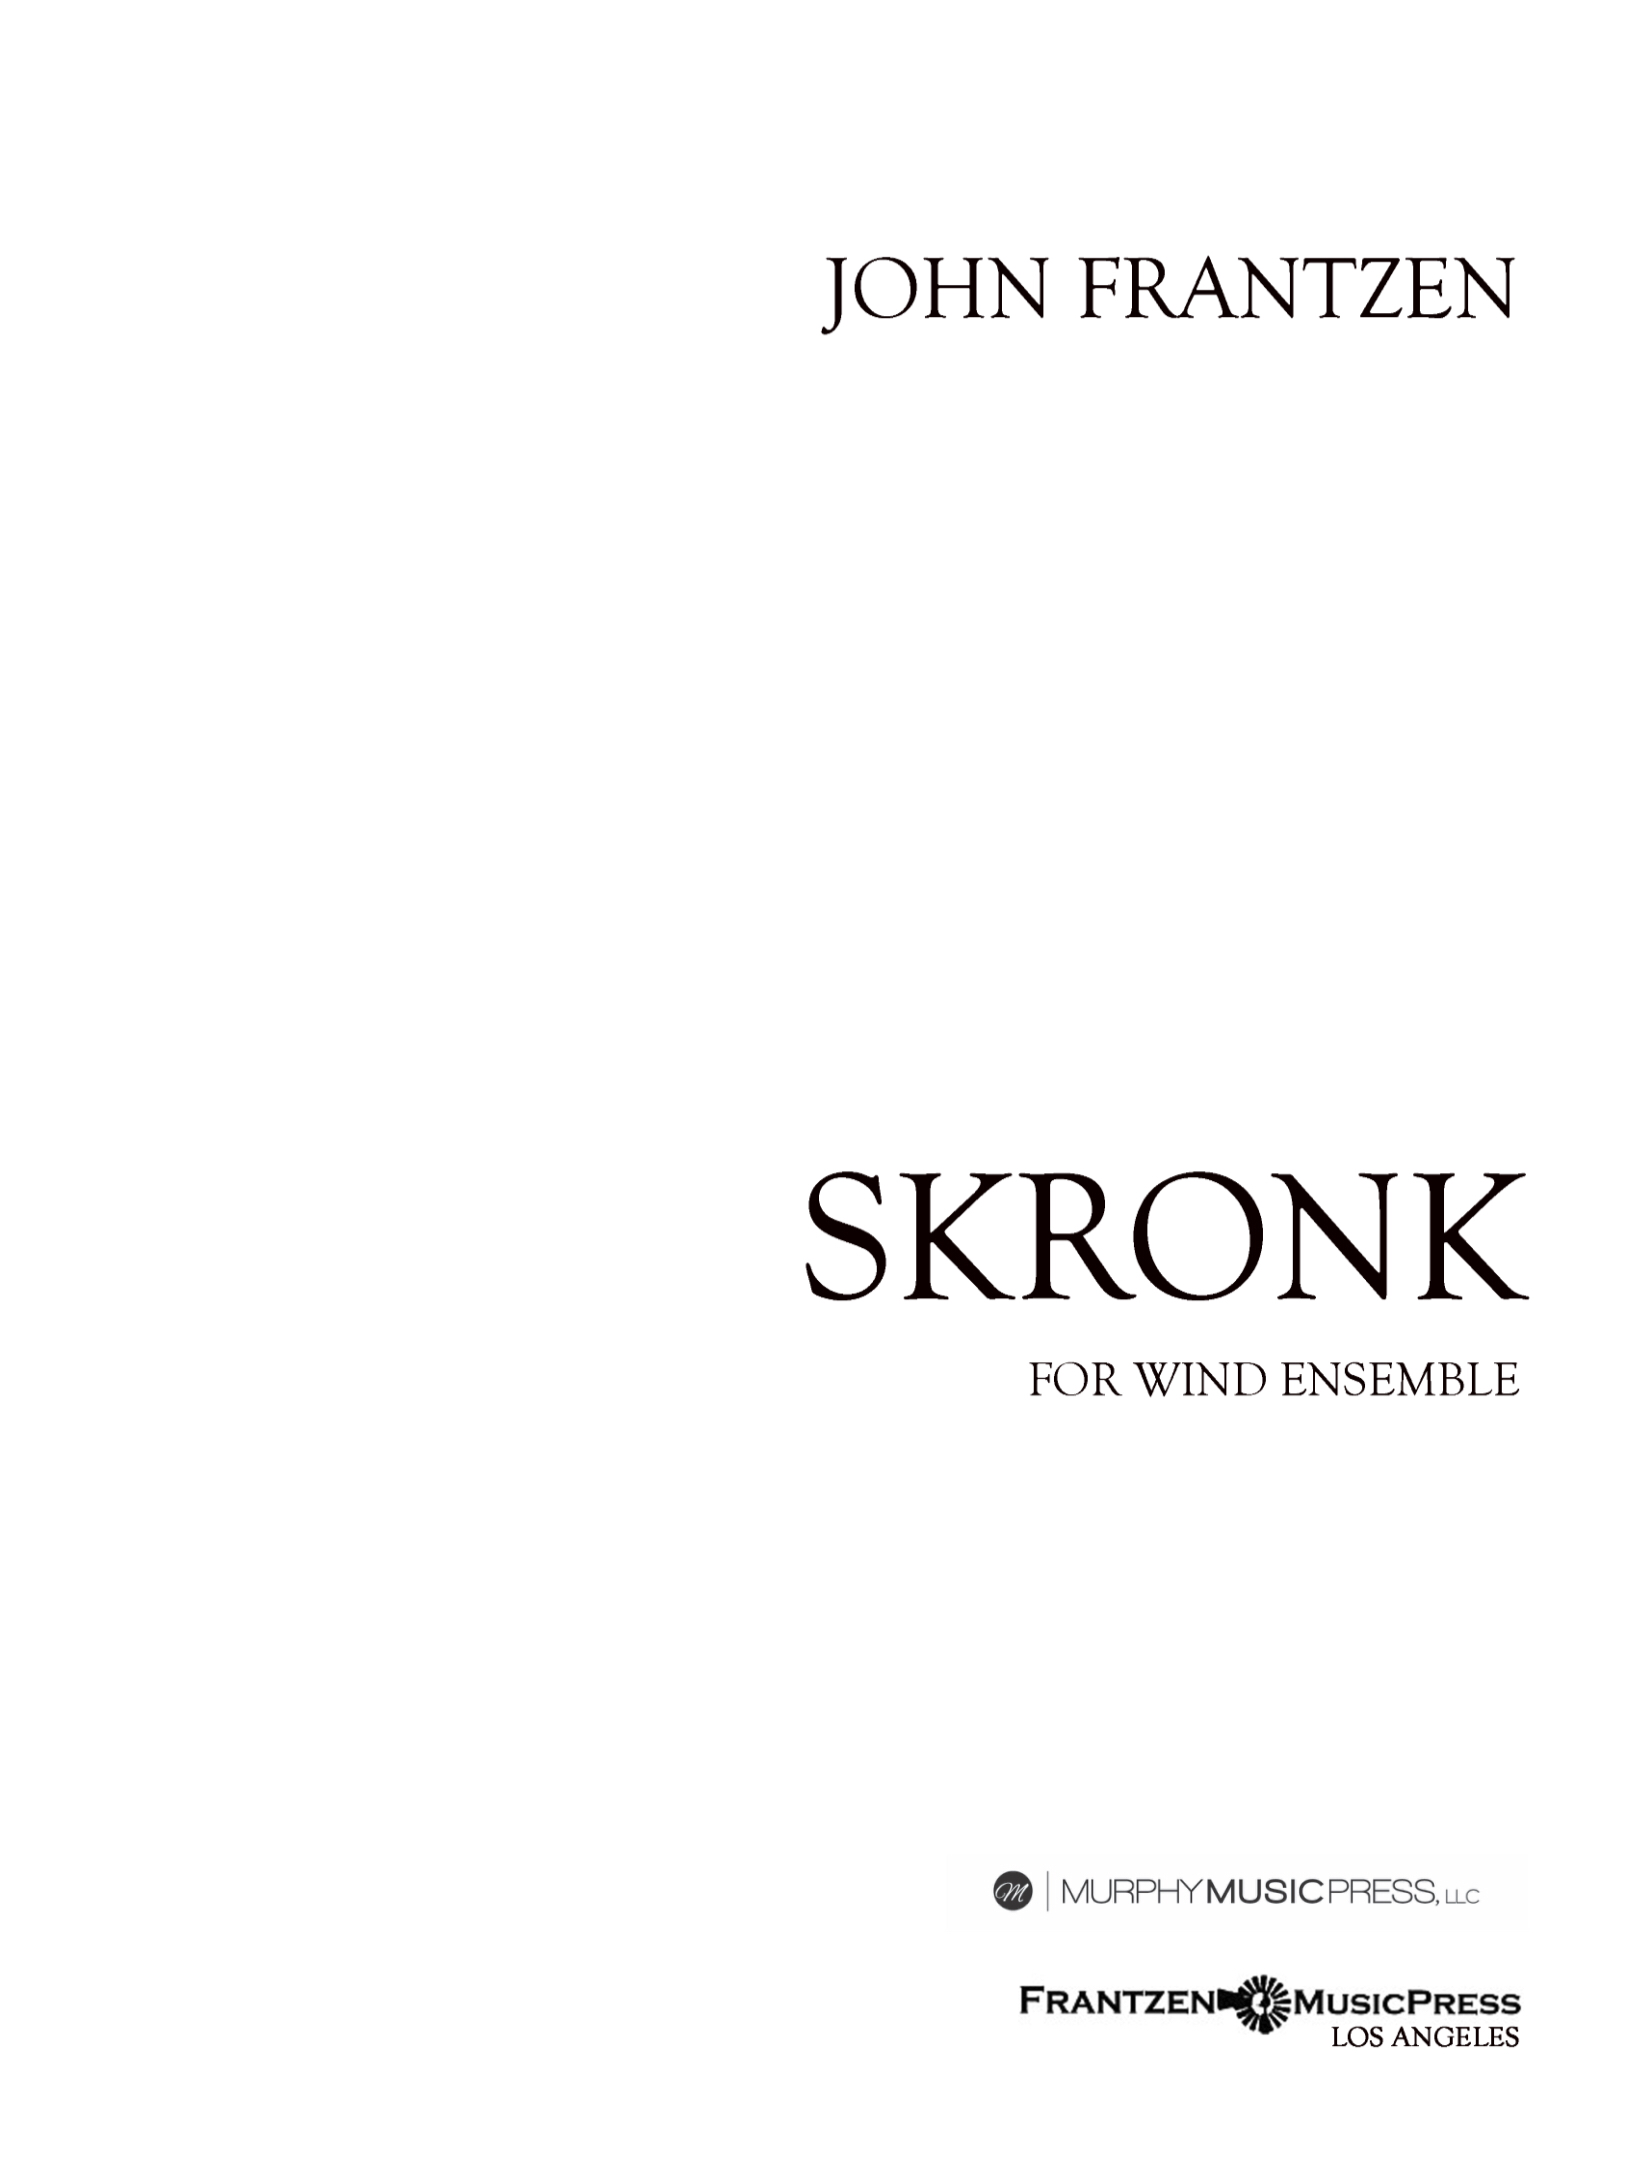 Skronk by John Frantzen